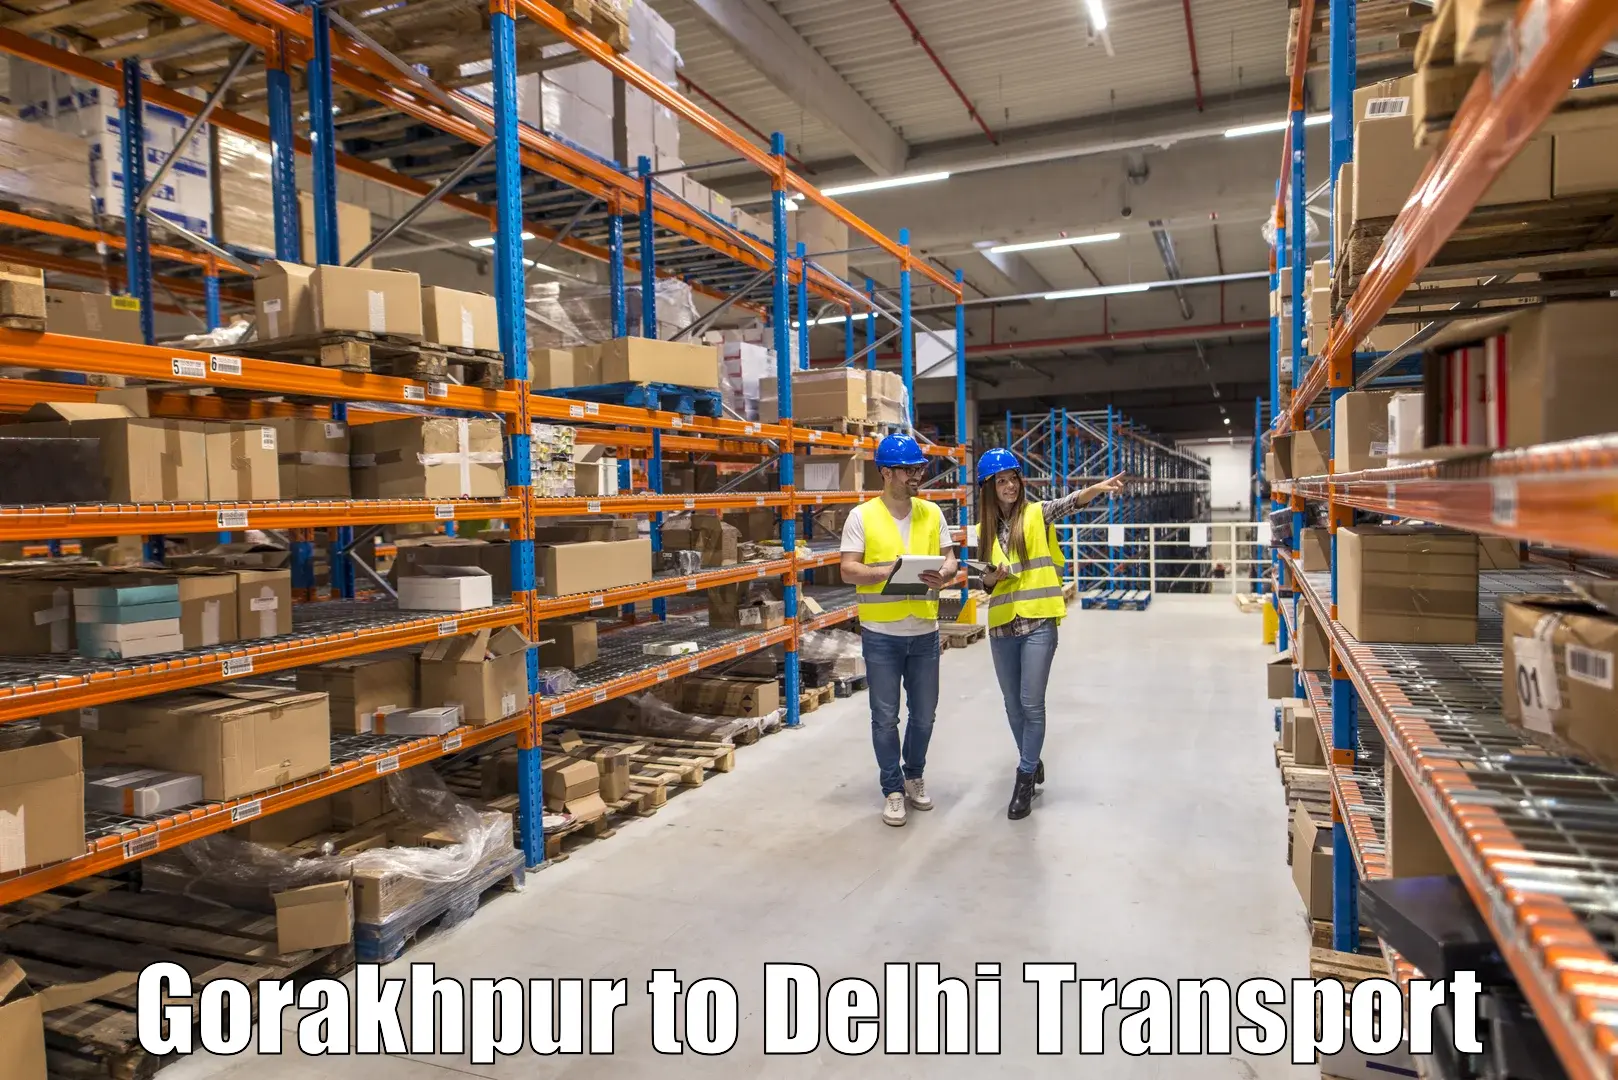 Shipping services Gorakhpur to Jawaharlal Nehru University New Delhi